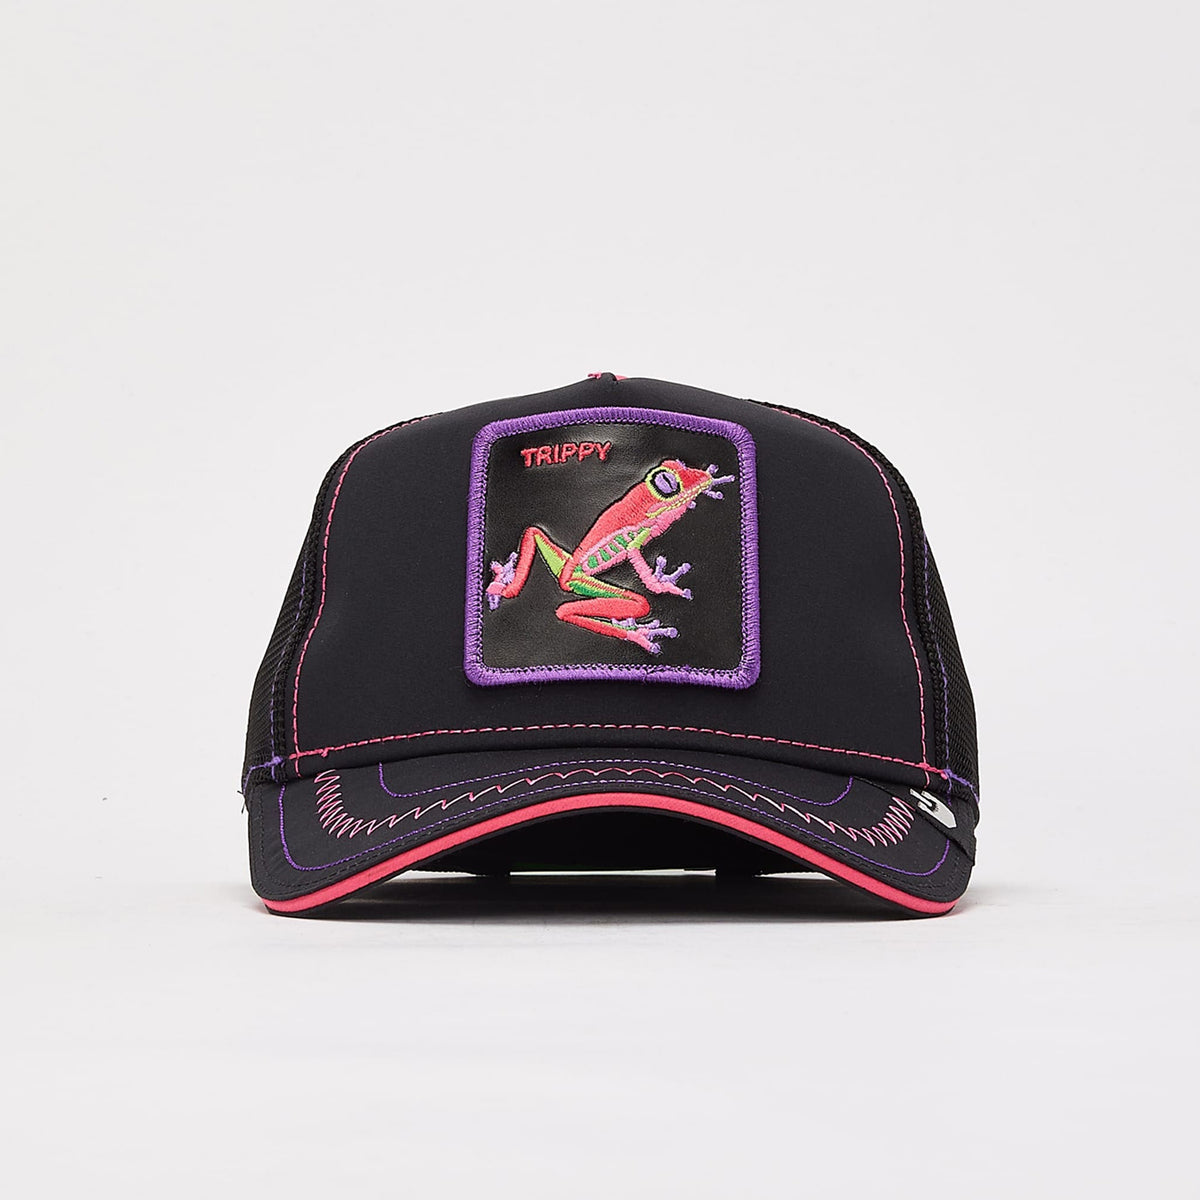 גורין ברוס כובע צפרדע טריפי צבעוני-Goorin Bros-One Size-נאקו